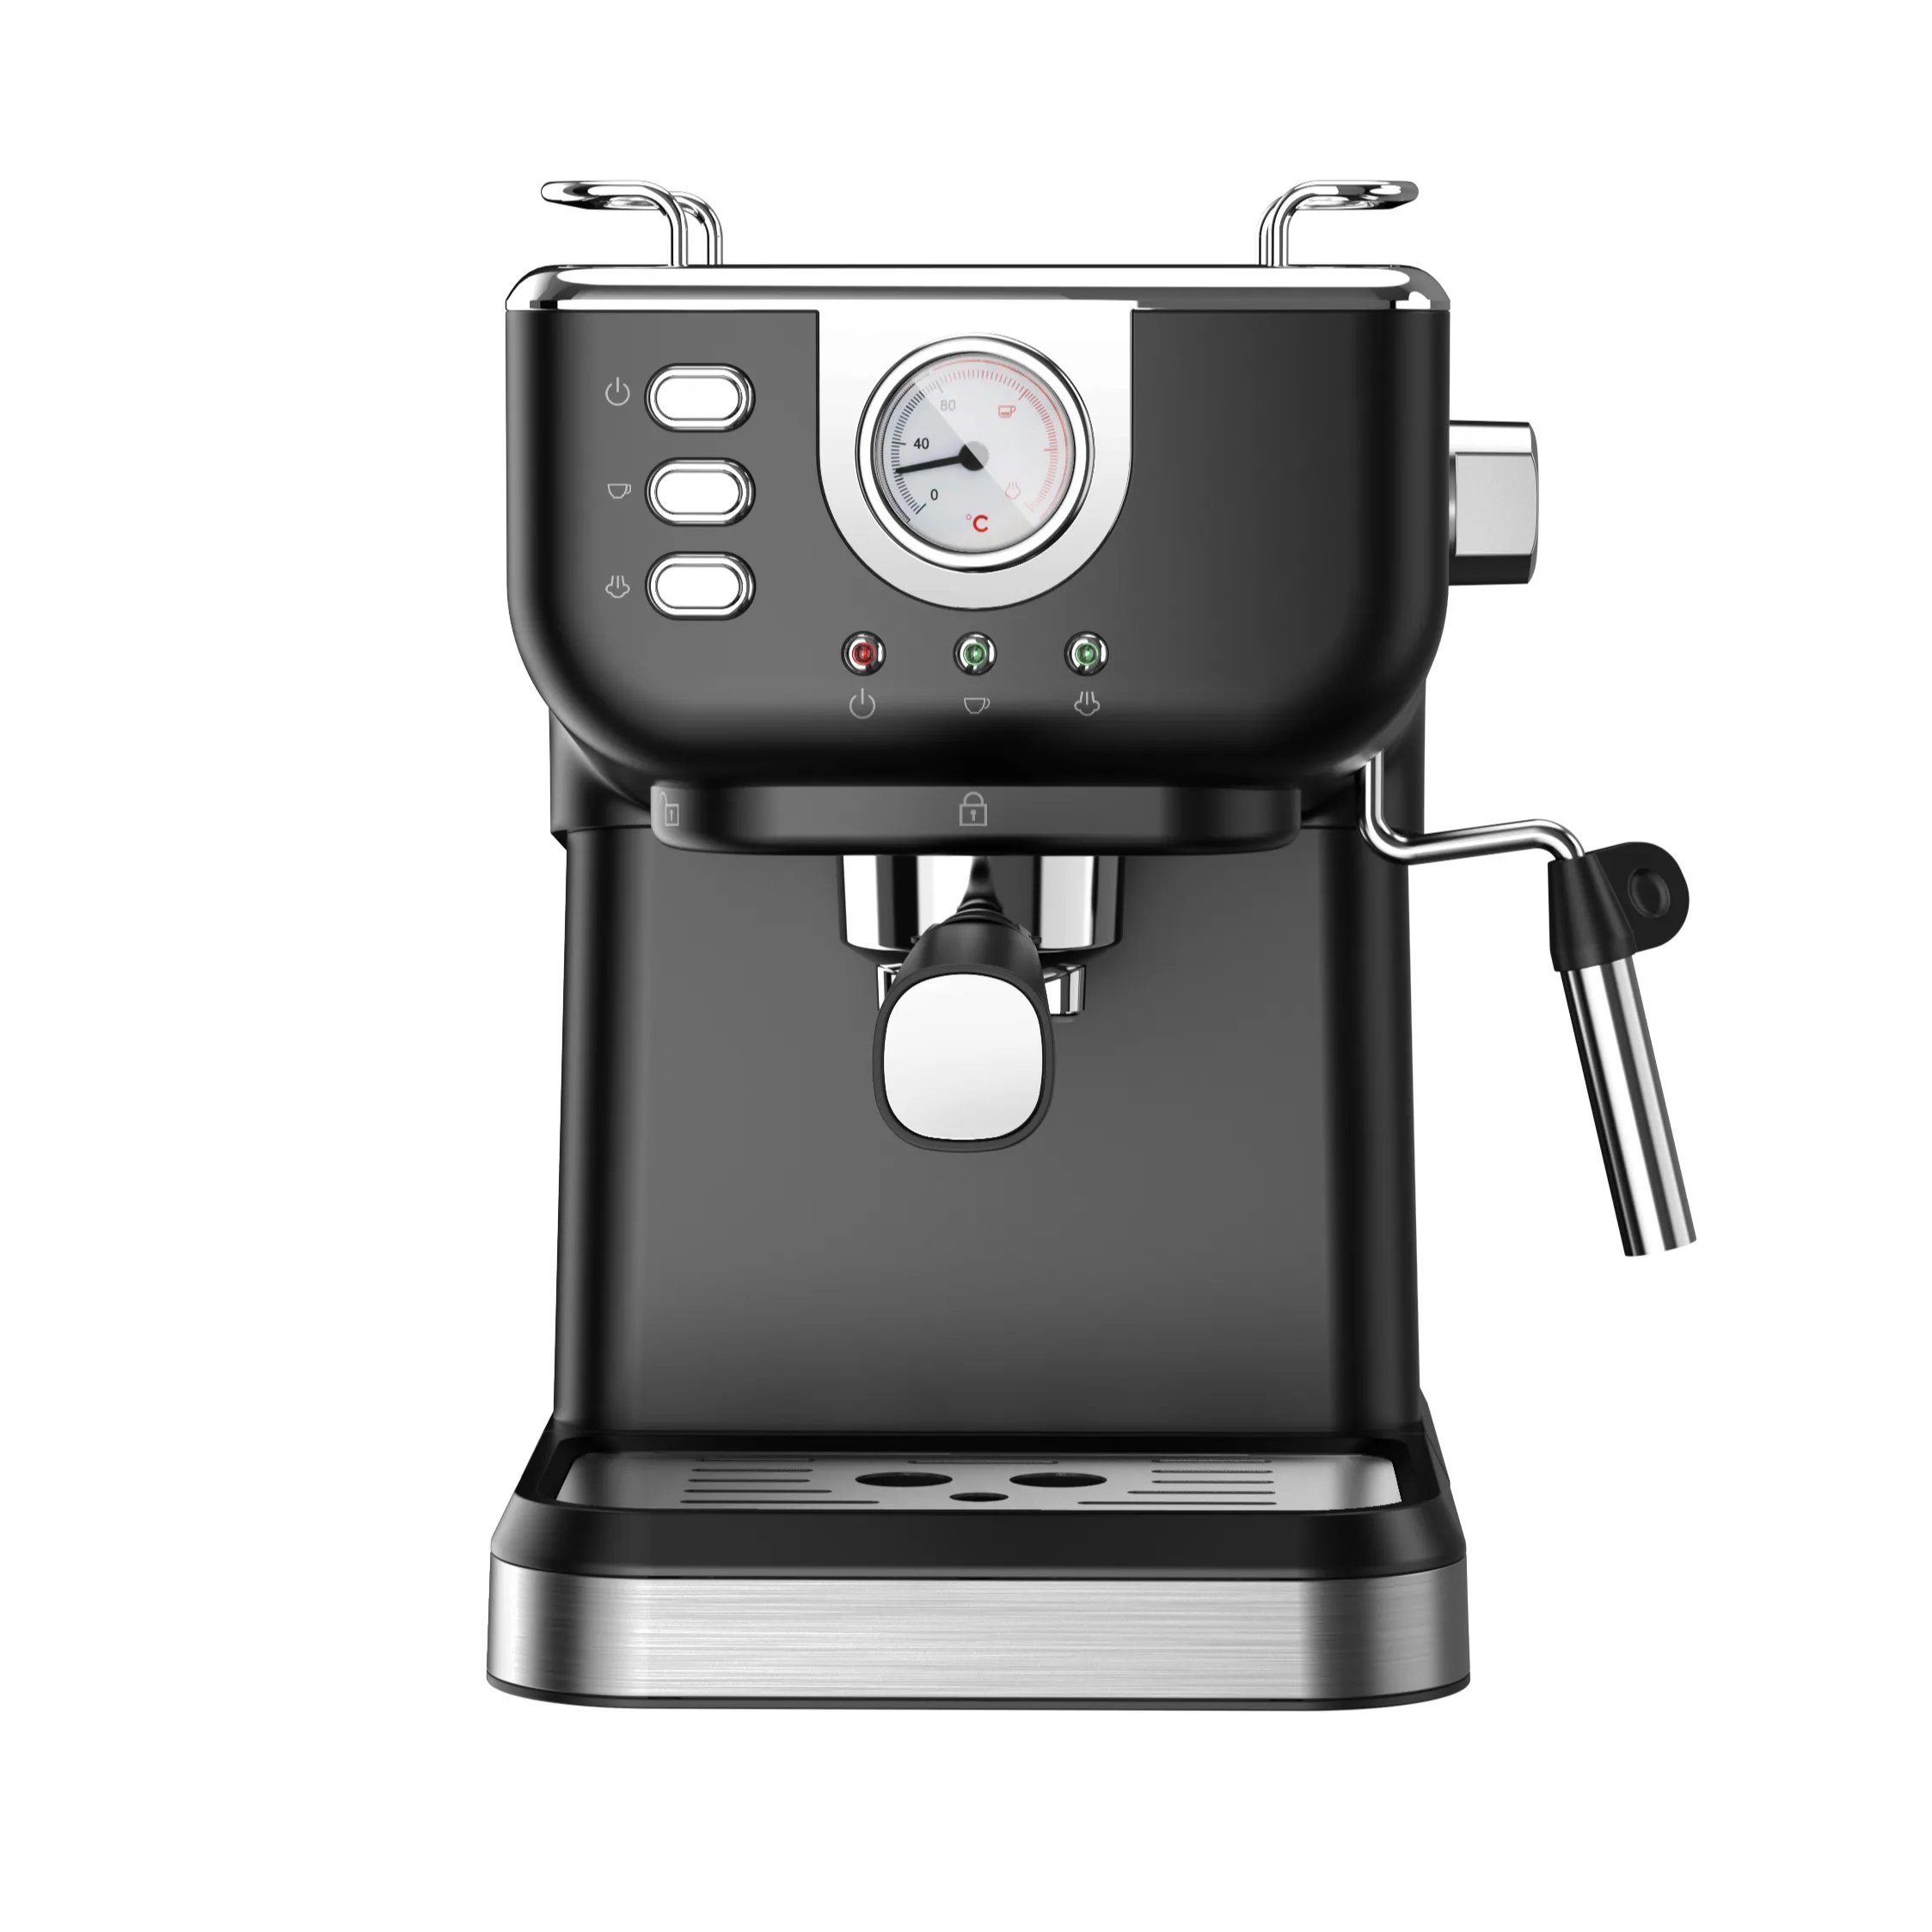 Retro style Italy Professional Home-use 15 Bar Cappuccino Or Latte Maker Espresso Coffee Machine